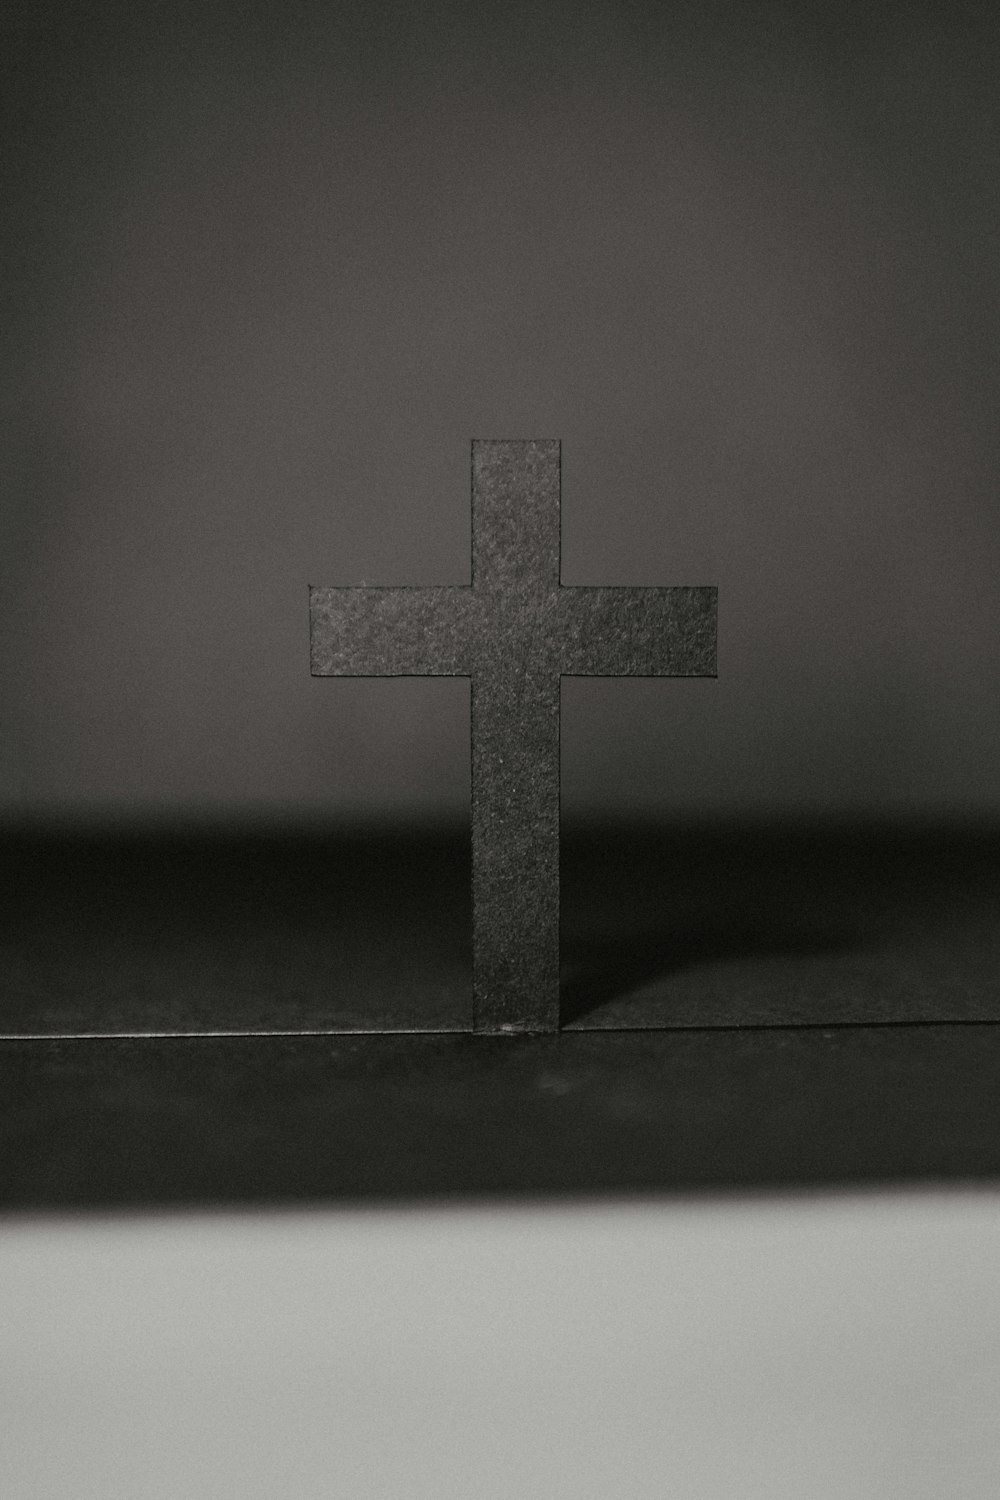 Foto in scala di grigi della croce sul tavolo